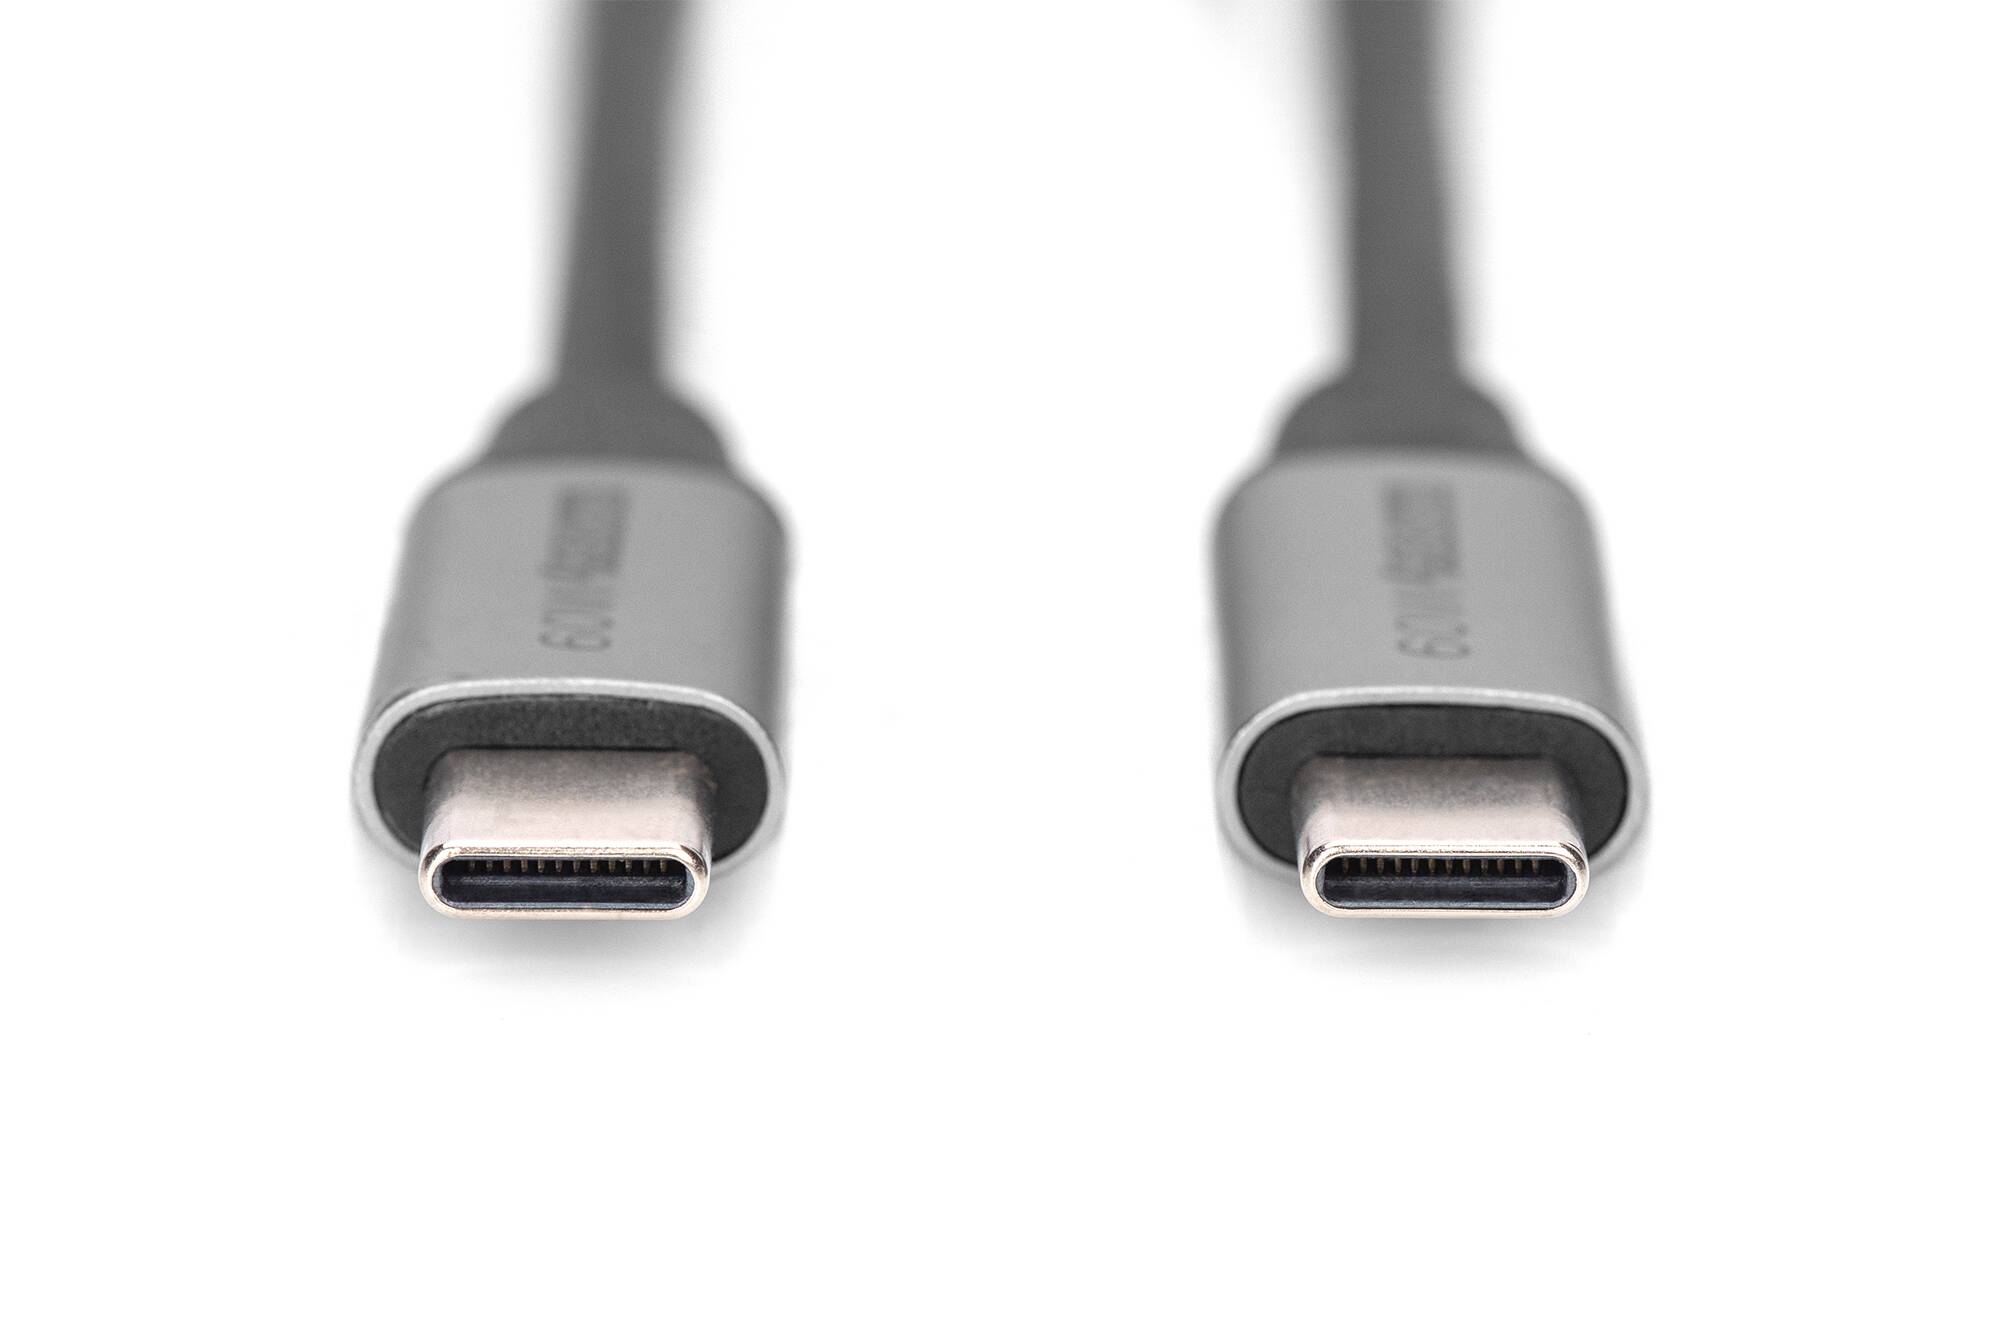 DIGITUS Cavo di collegamento USB-3.0 Gen.1, USB Type -C mt 0,5